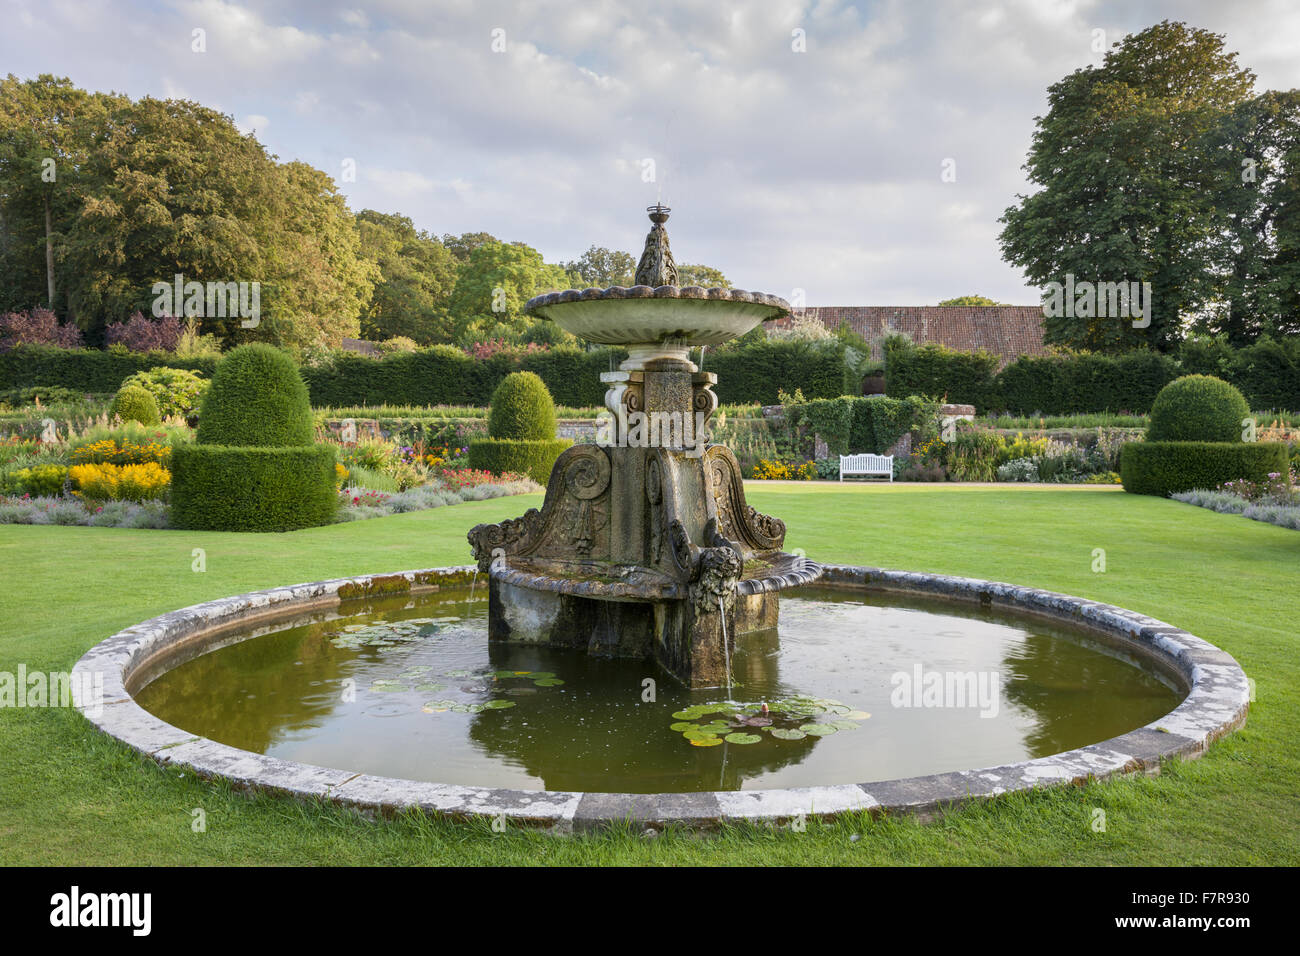 Der Brunnen am Blickling Estate, Norfolk. Blickling ist ein Turm aus rotem Backstein jakobinischen Herrenhaus, sitzen in wunderschönen Gärten und Parks. Stockfoto